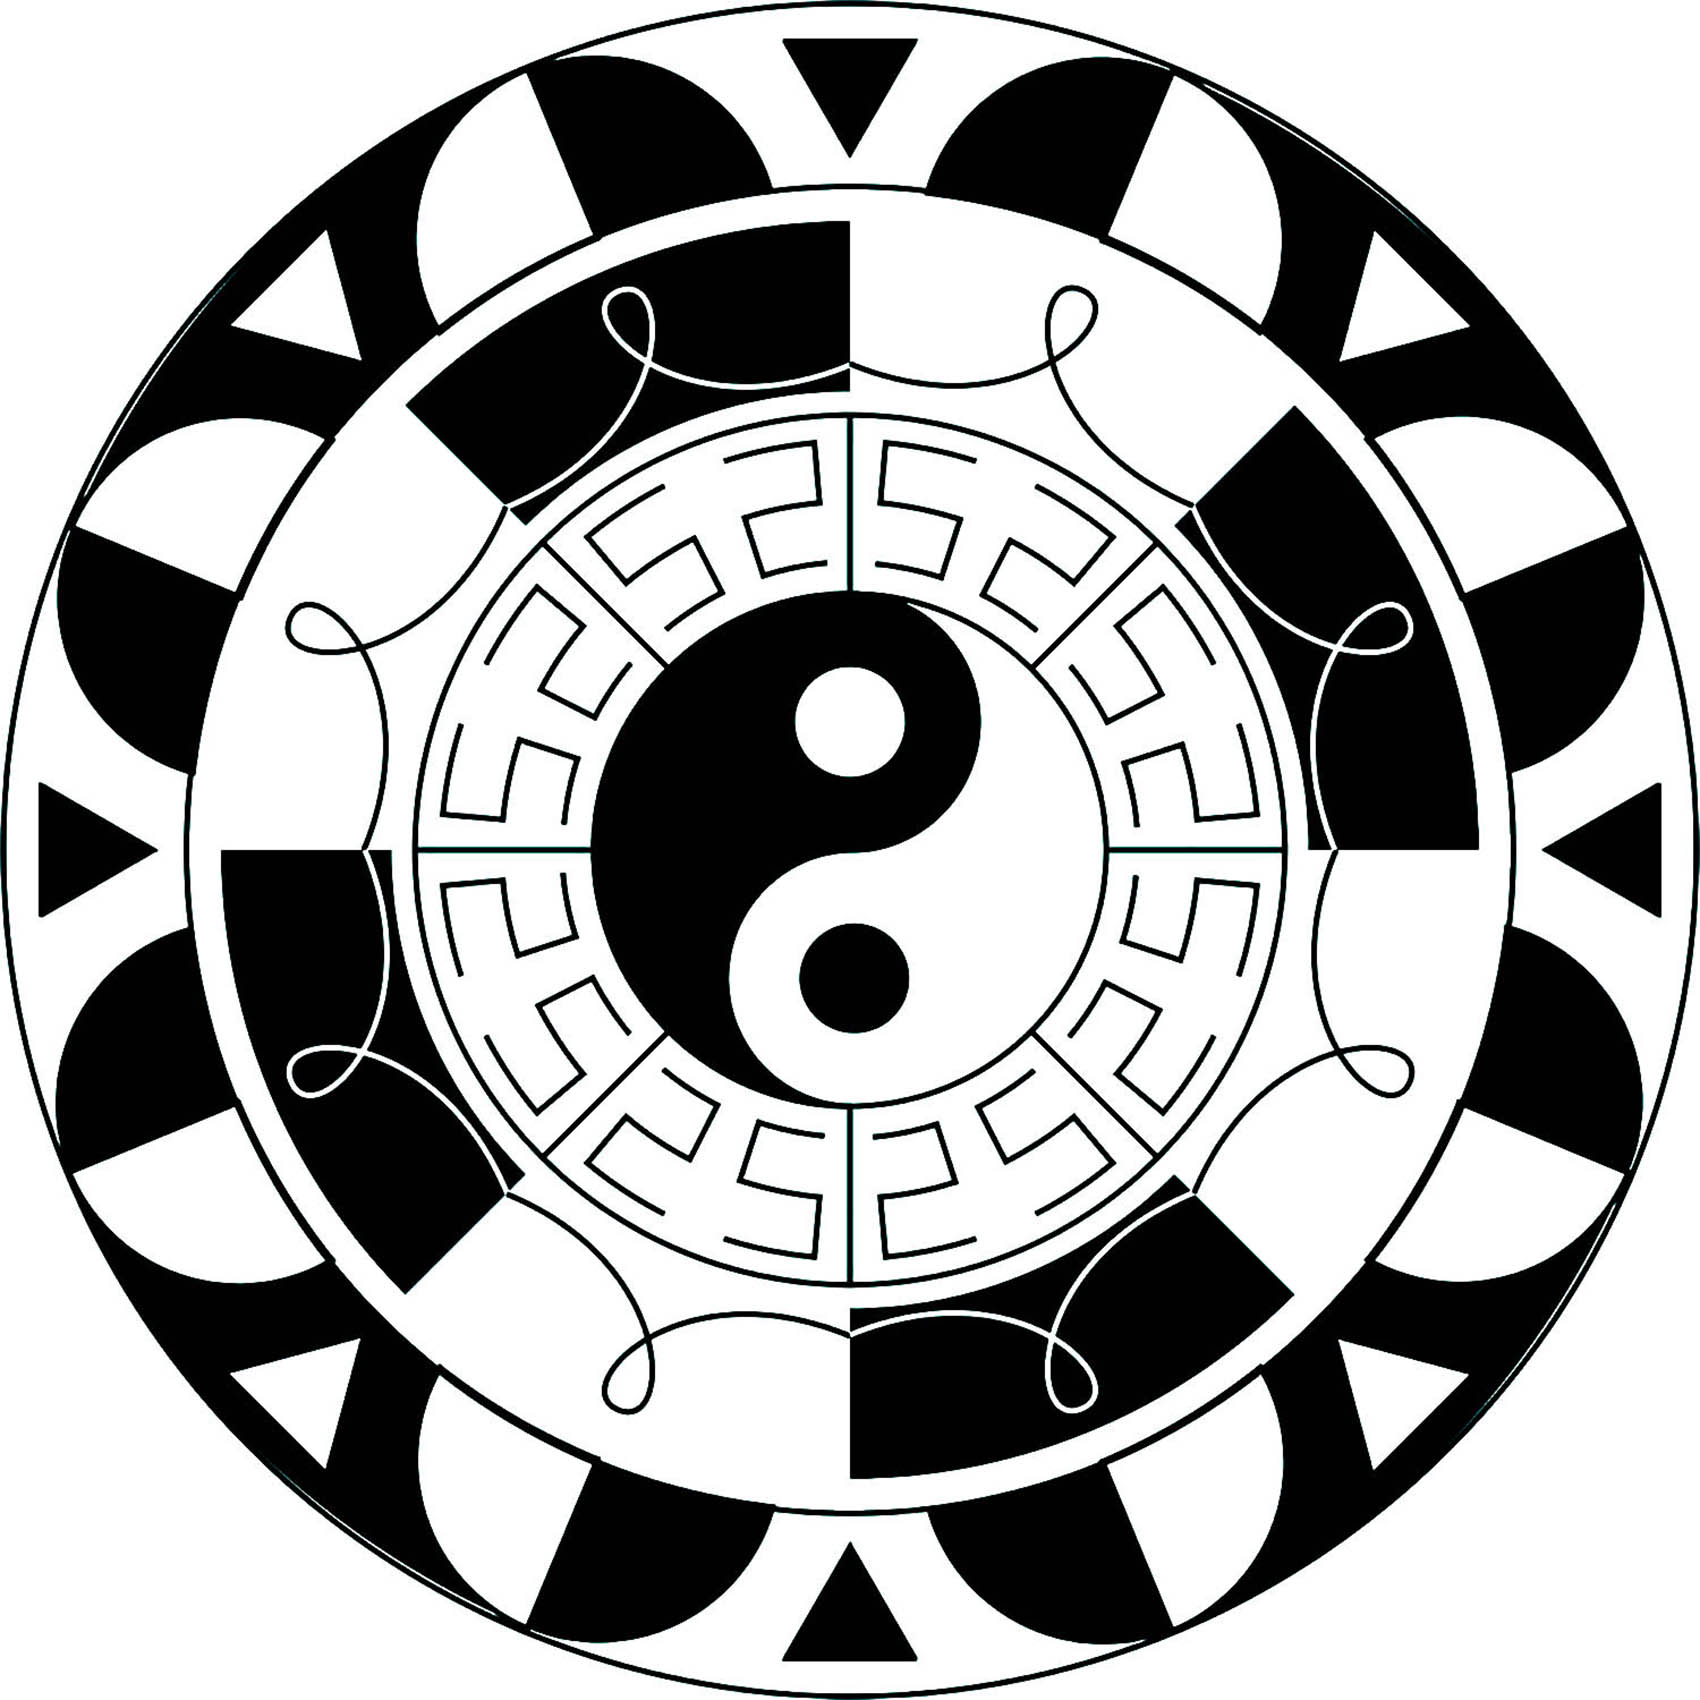 Le fameux symbole Yin & Yang intégré à un joli Mandala noir & blanc